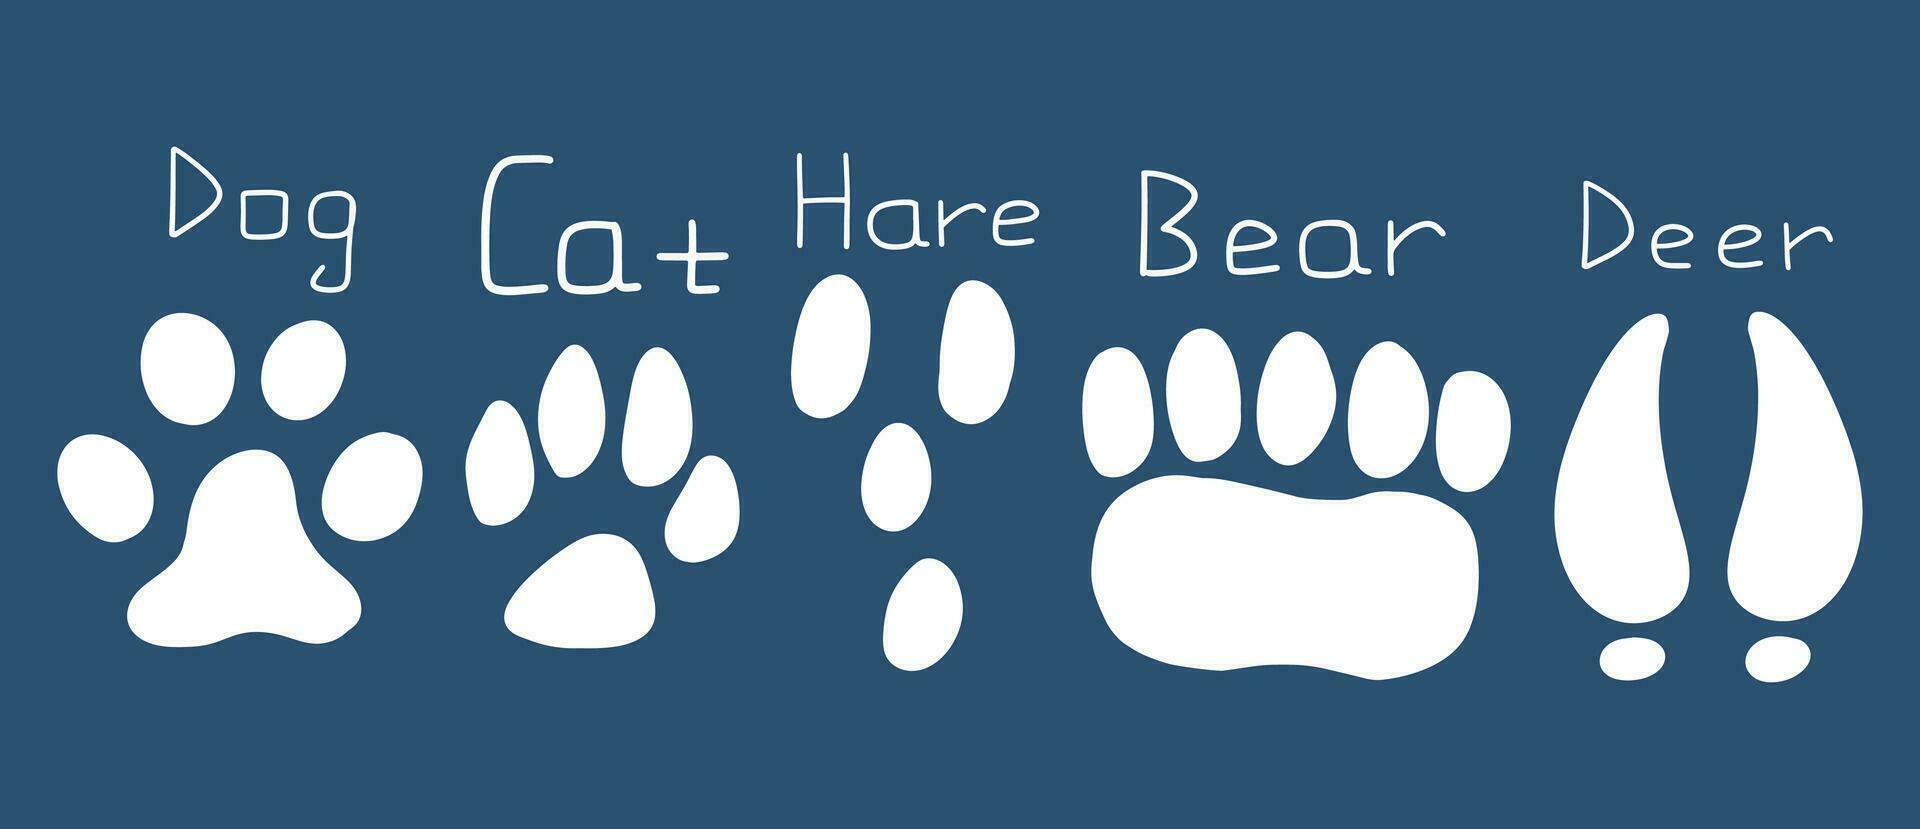 conjunto de huellas de diferente animales, gato, perro, oso, liebre, ciervo. vector mano dibujado ilustración